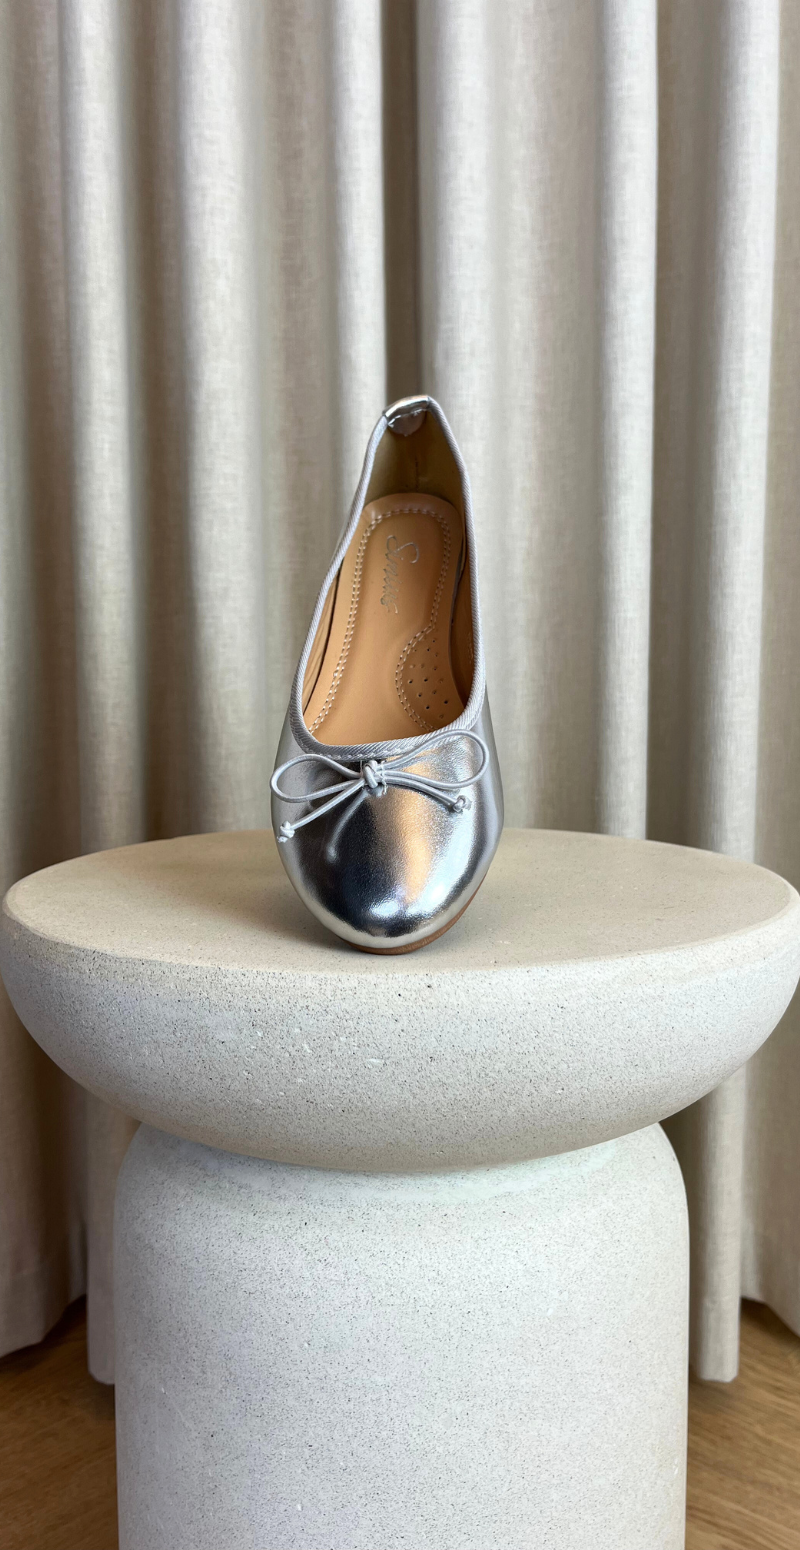 sølv ballerina med sløjfe foran forfra likelondon shoes